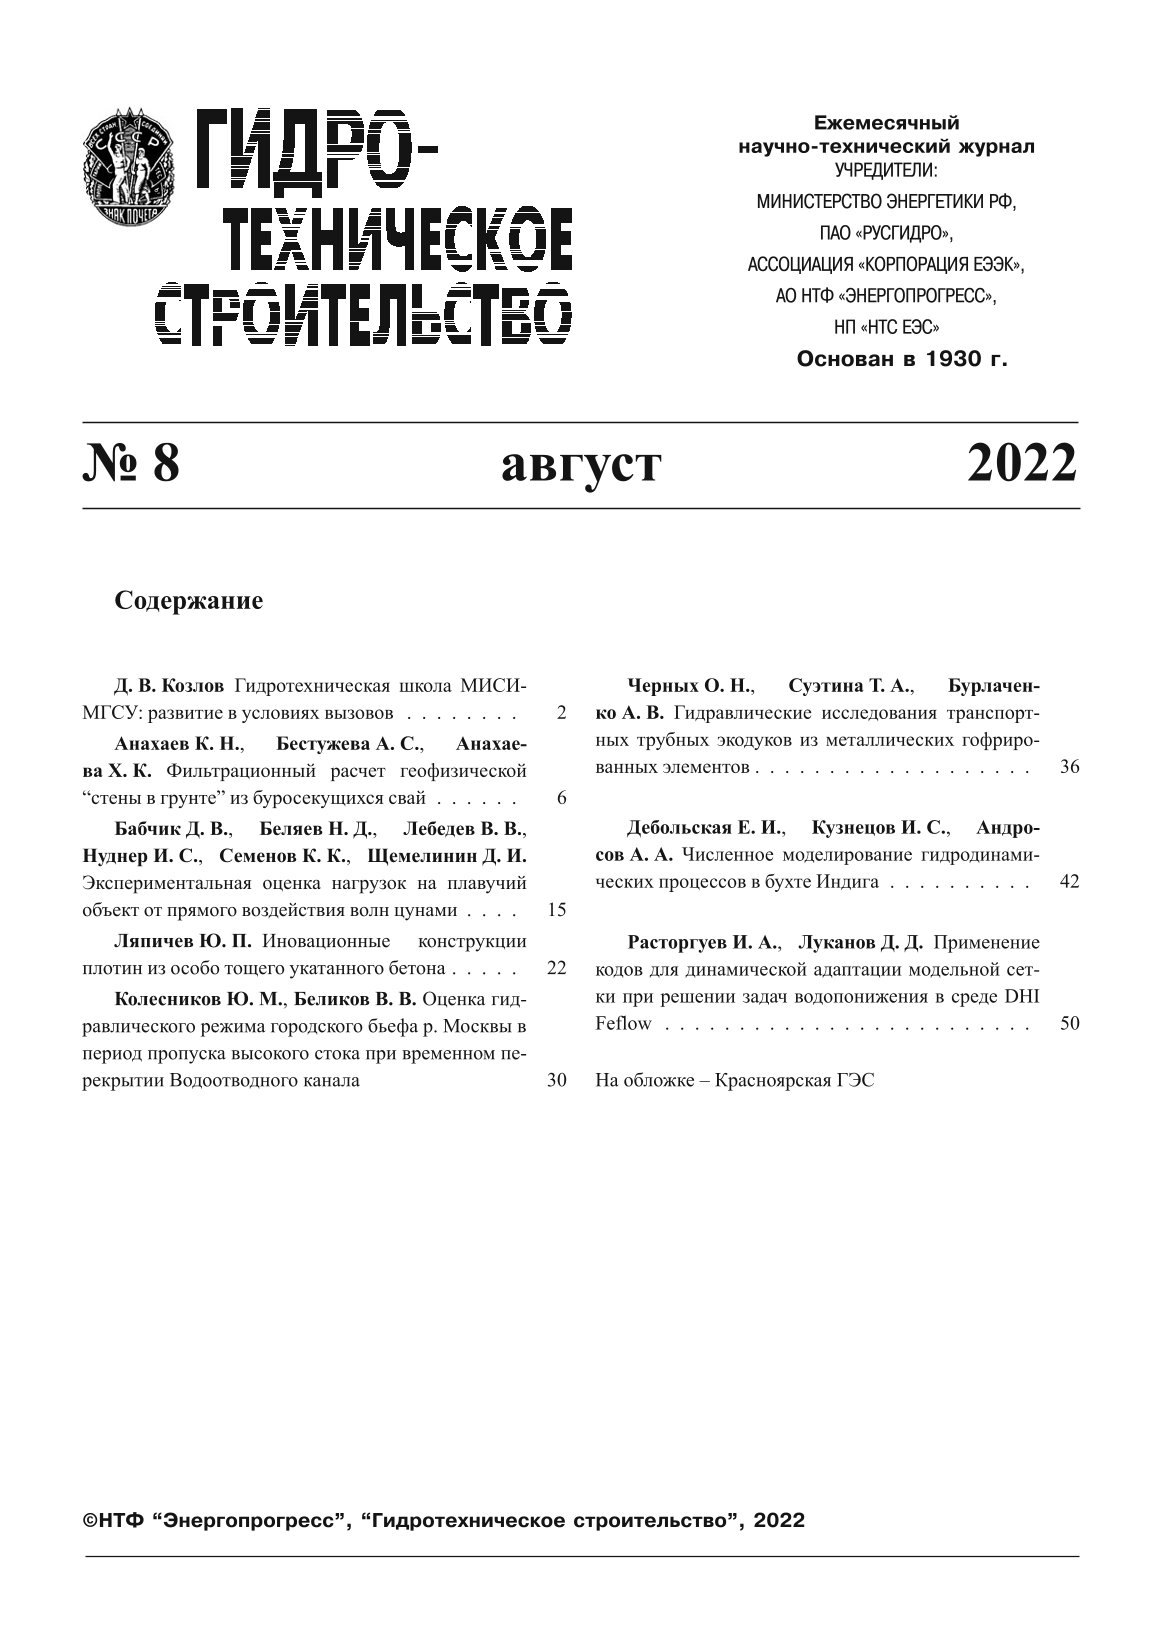 Статья из журнала "Гидротехническое строительство" № 8, 2022